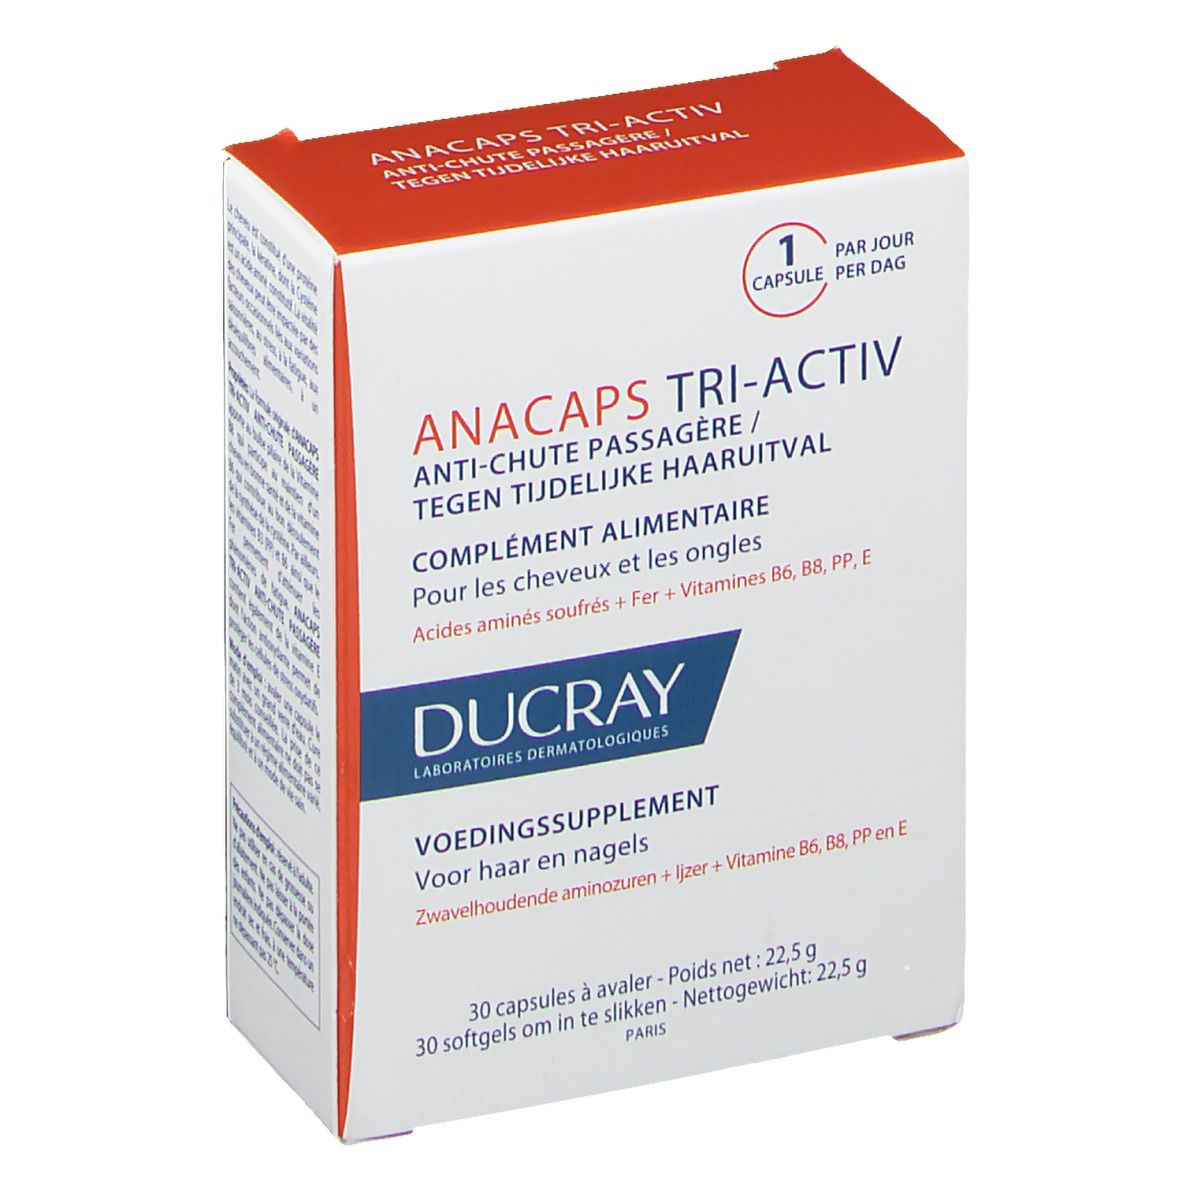 Ducray Anacaps Tri-Activ tegen Tijdelijke Haaruitval